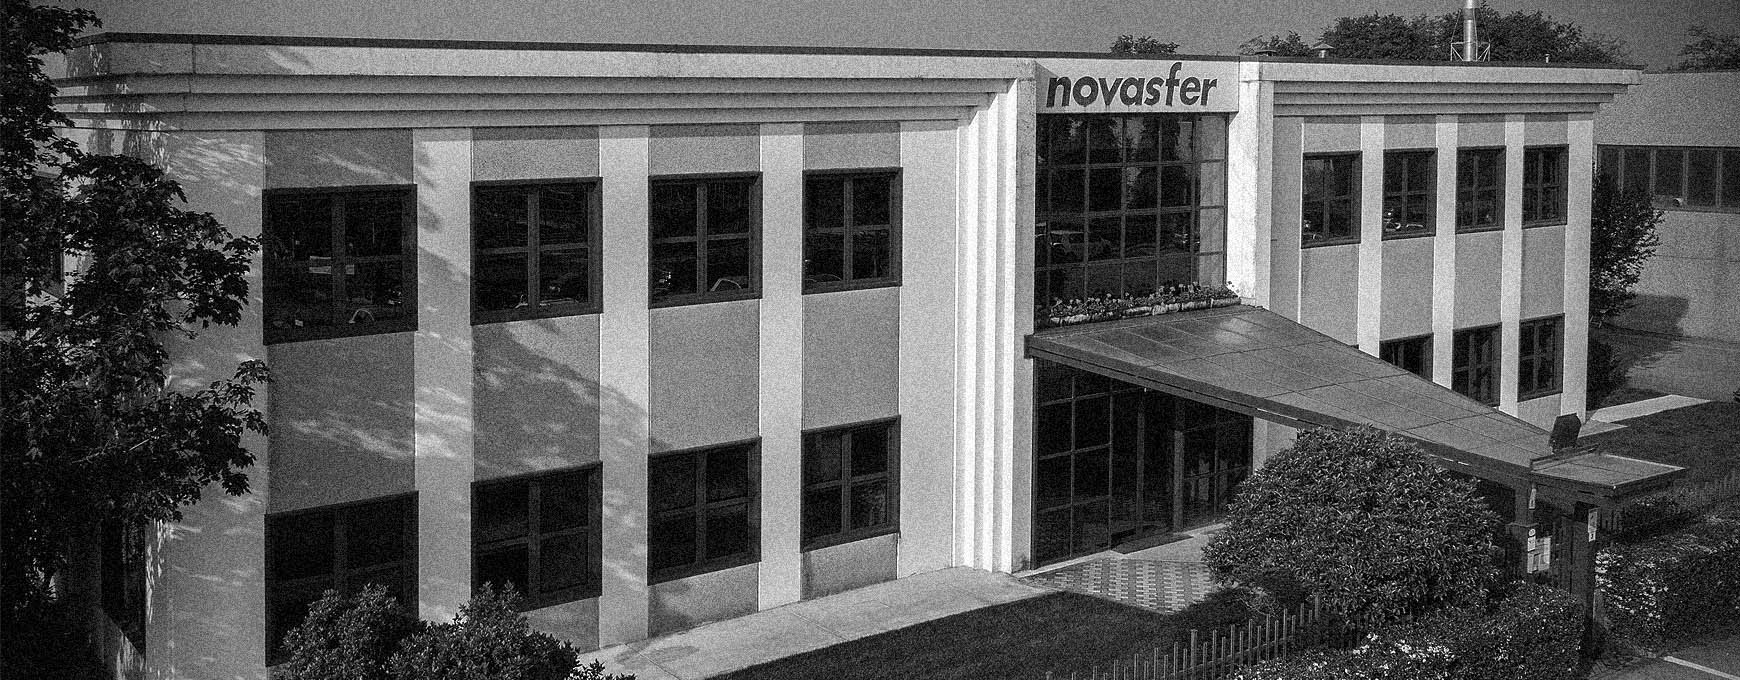 Novasfer produzione componenti riscaldamento 1980